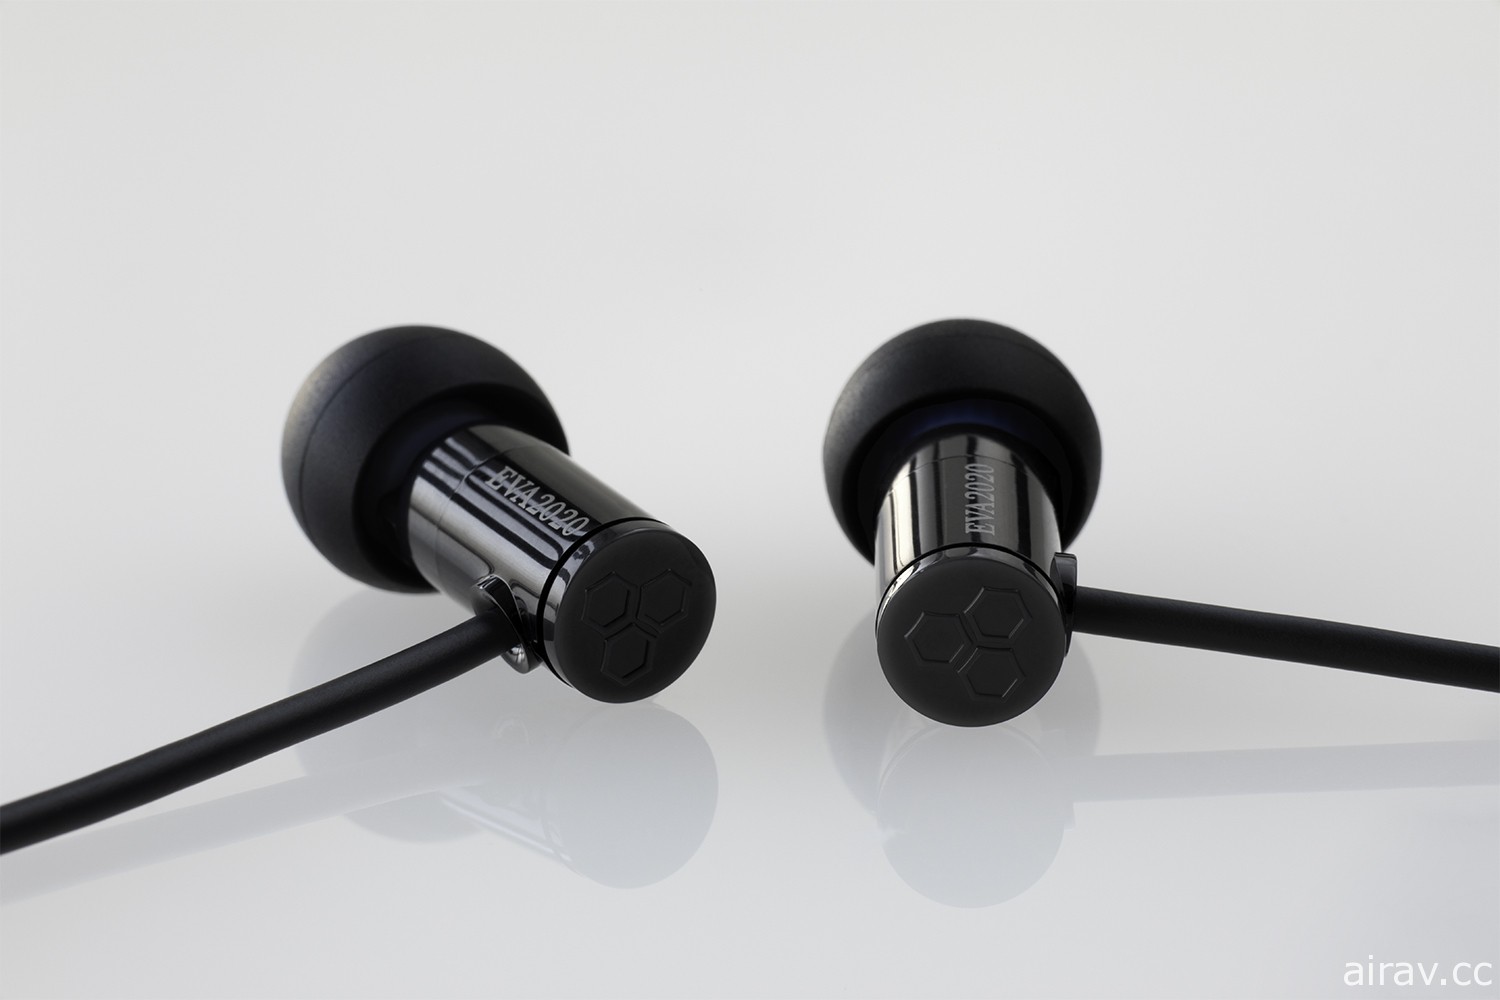 SNEXT 发表《福音战士》合作设计款式无线 / 有线耳机 预定 8 月上市